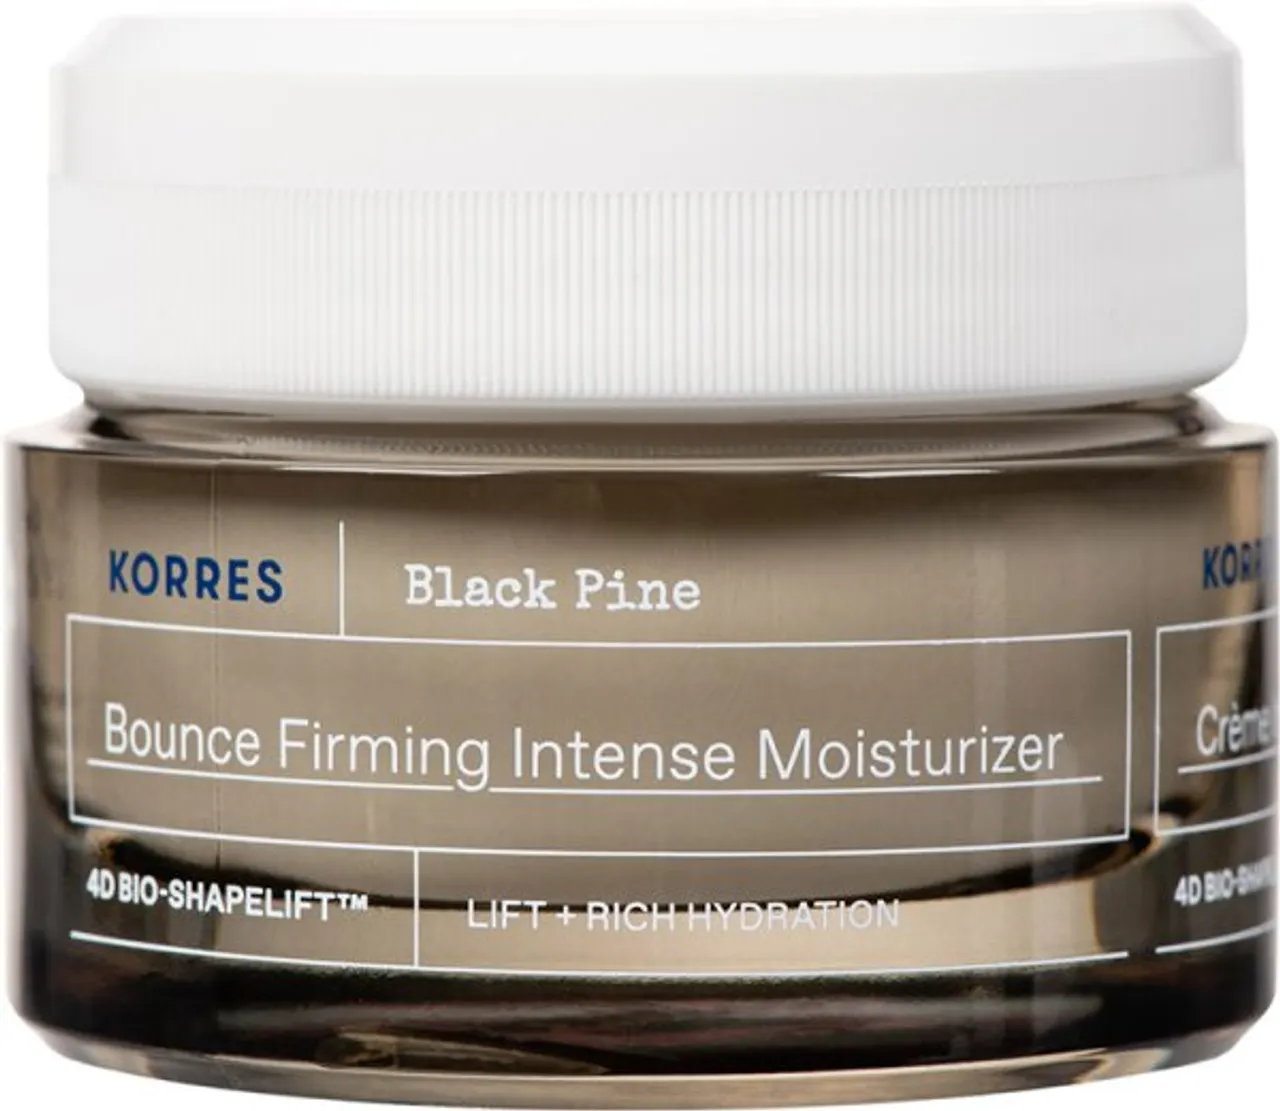 Korres Black Pine 4D Bio-ShapeLift intensiv feuchtigkeitsspendende Creme 40 ml